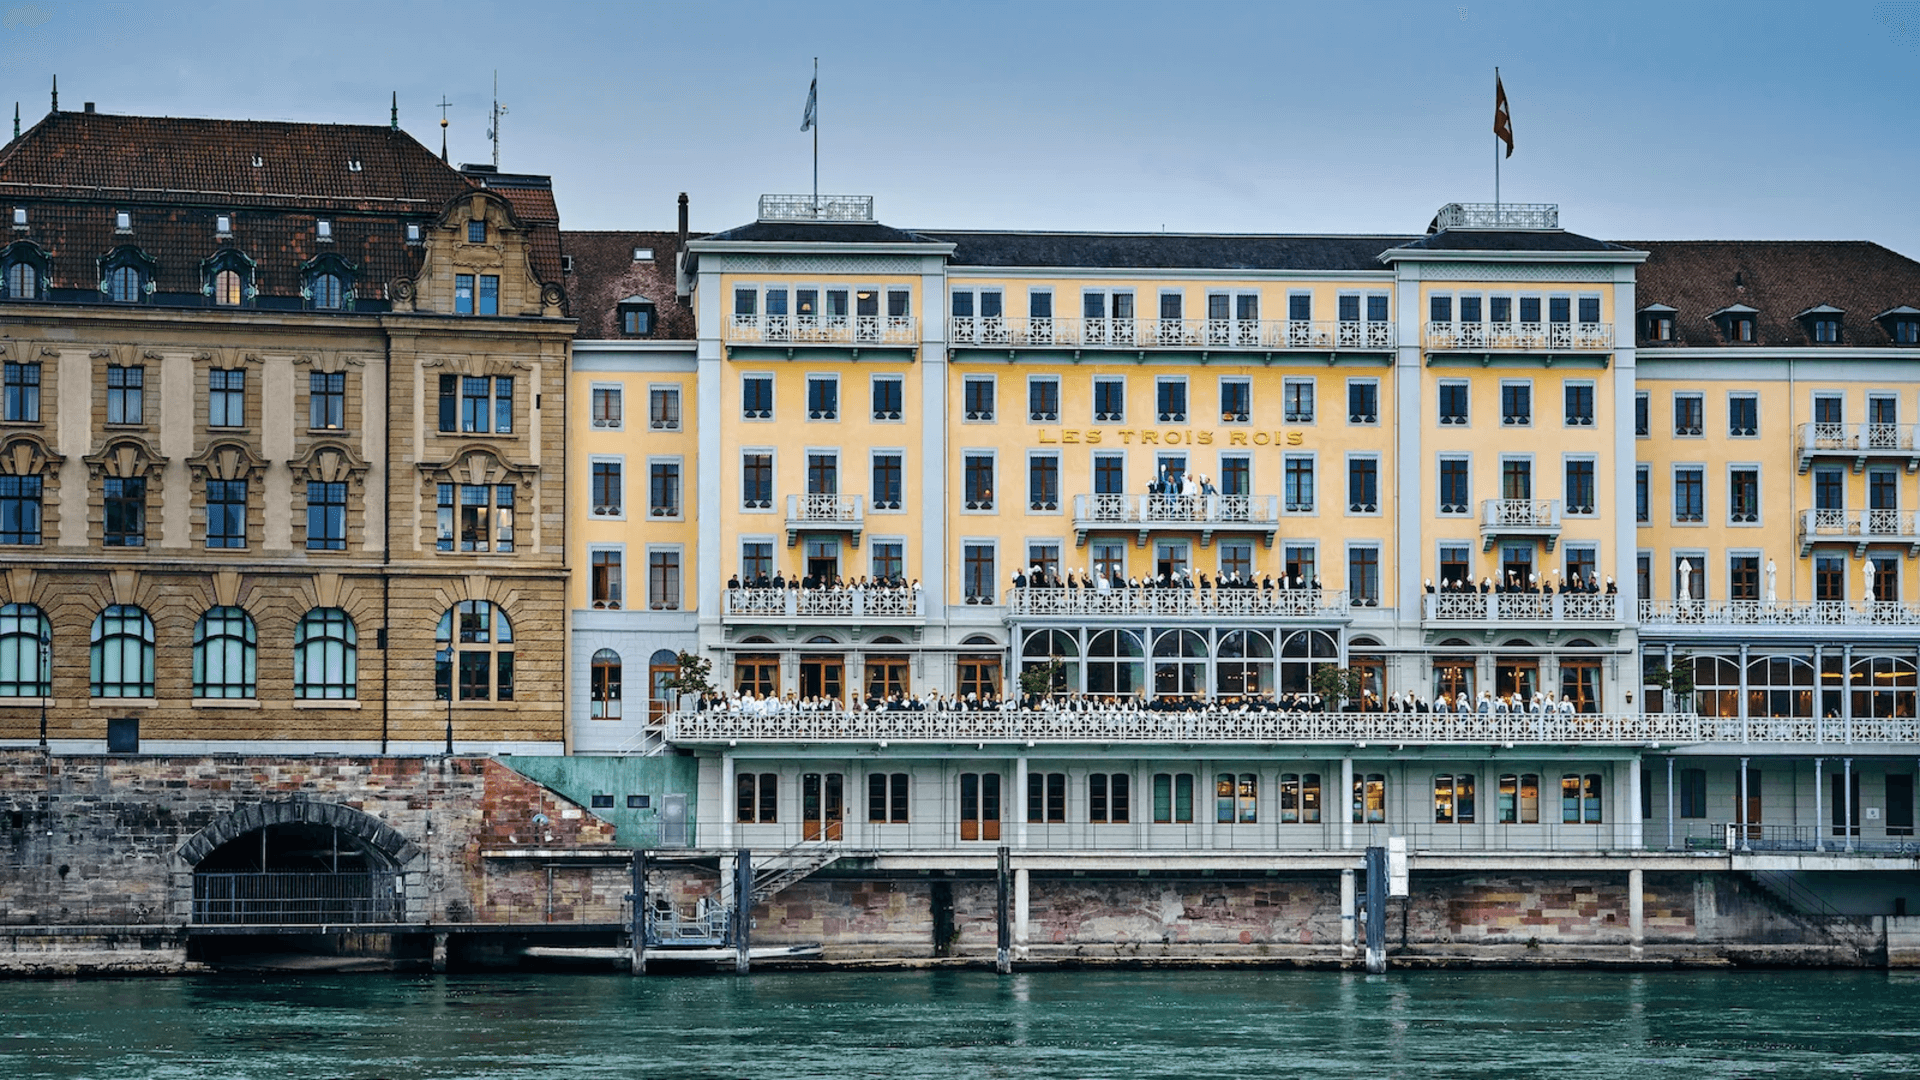 Отель Les Trois Rois с прекрасным балконом с видом на реку Рейн